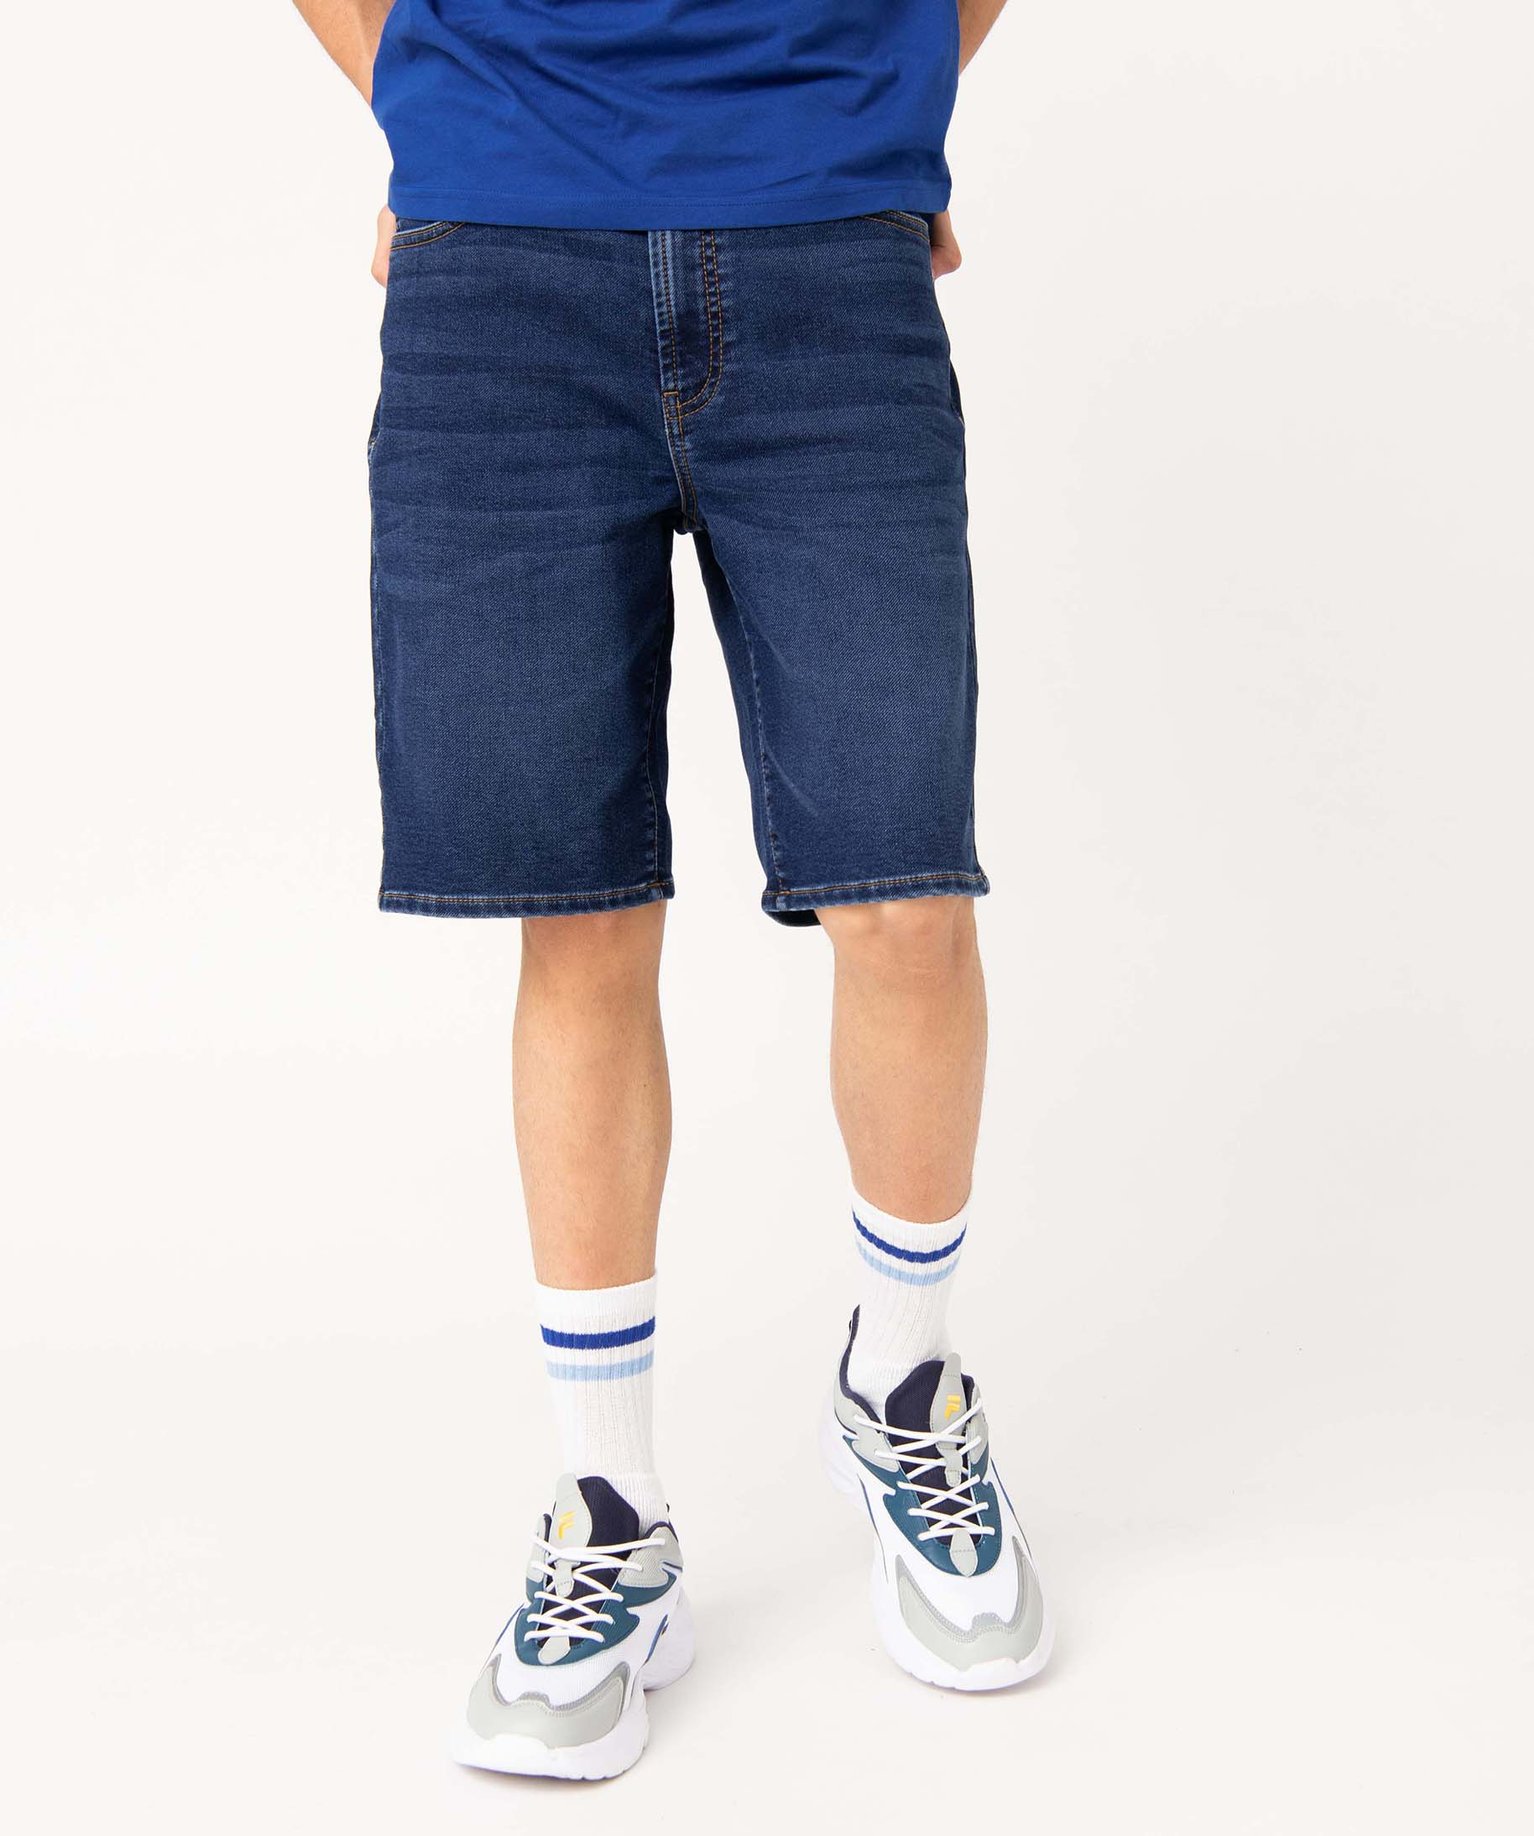 bermuda en jean homme extensible coupe droite bleu shorts en jean